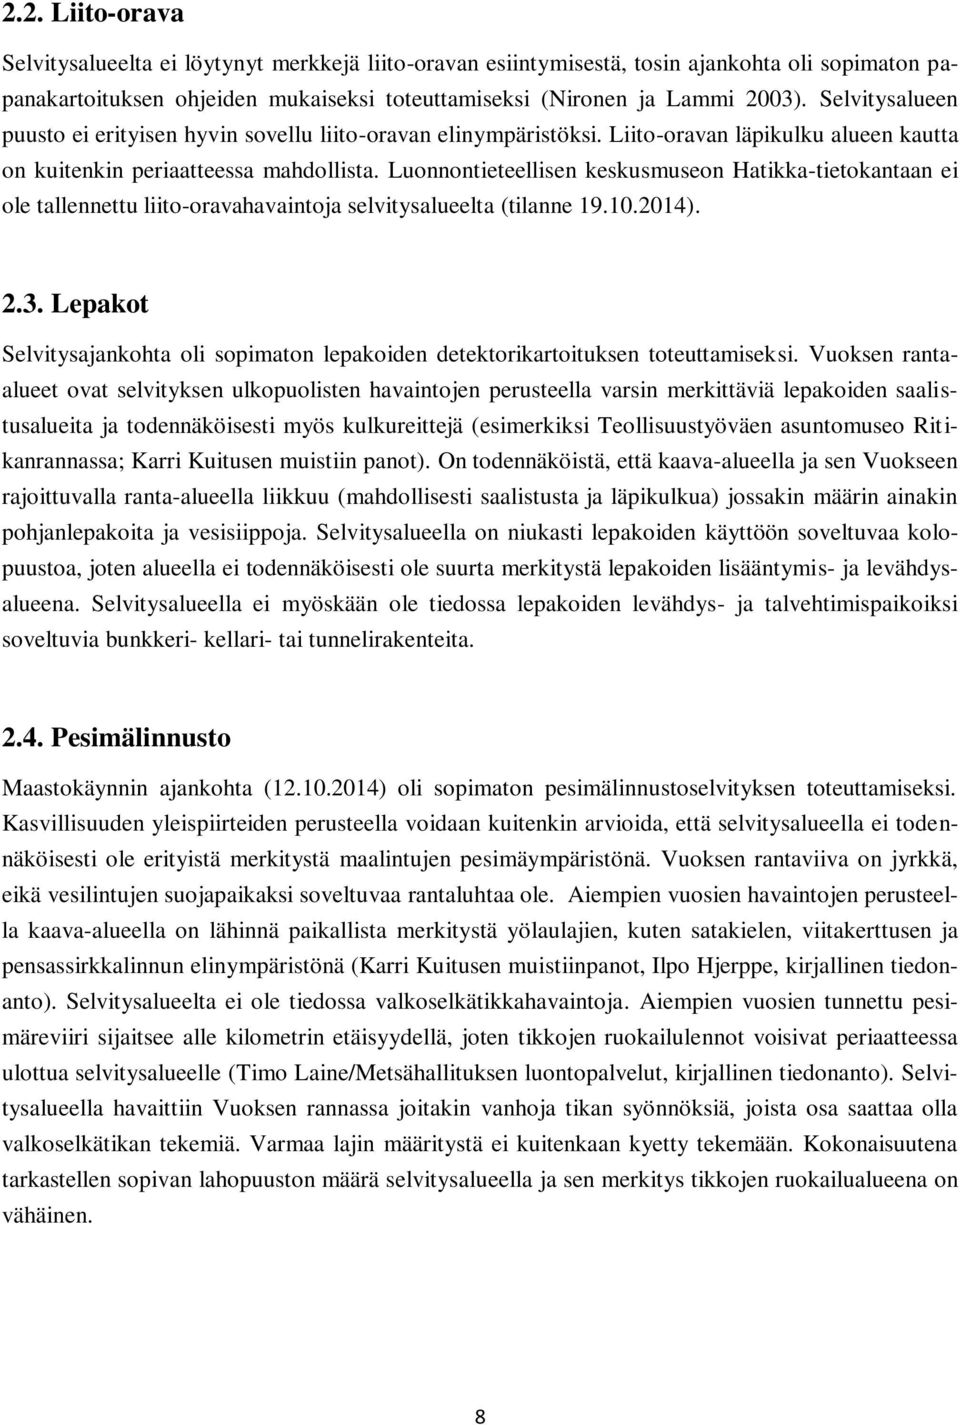 Luonnontieteellisen keskusmuseon Hatikka-tietokantaan ei ole tallennettu liito-oravahavaintoja selvitysalueelta (tilanne 19.10.2014). 2.3.